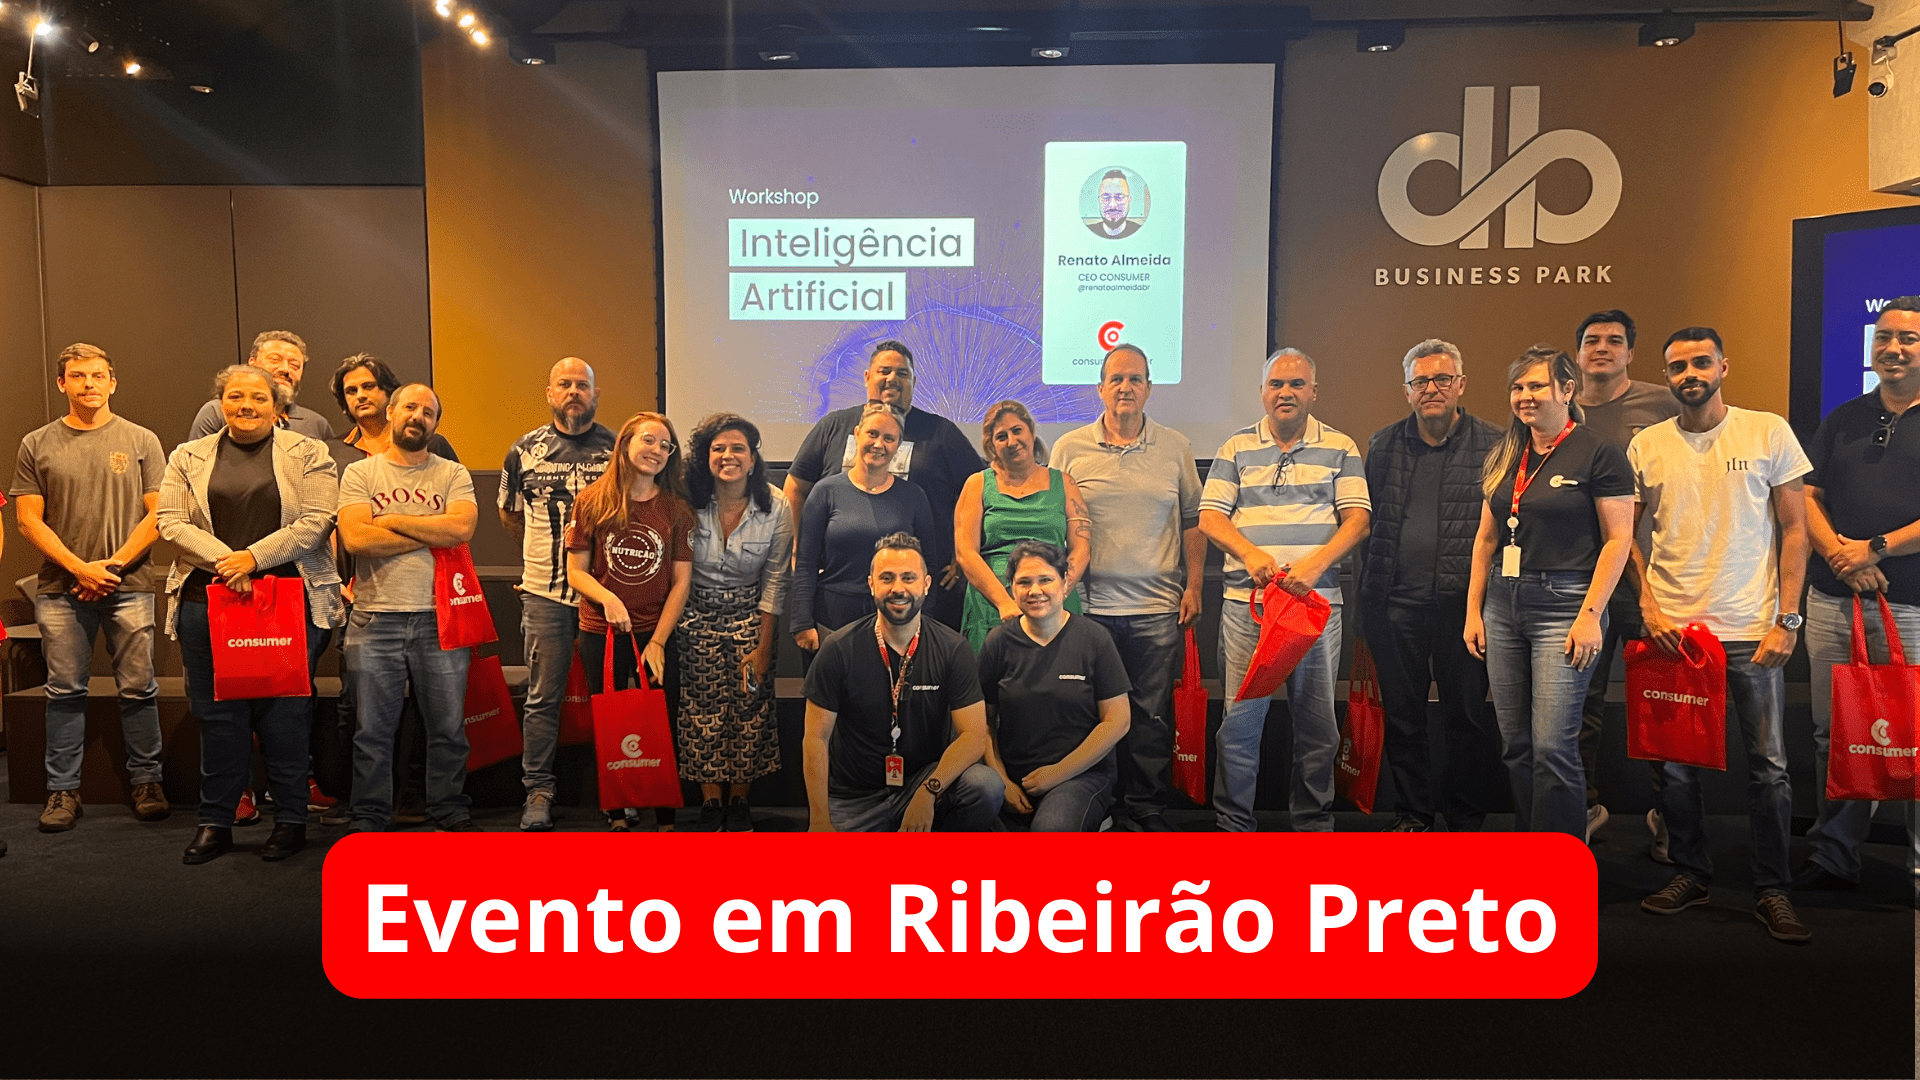 Espectadores do evento reunidos em foto em Ribeirão Preto